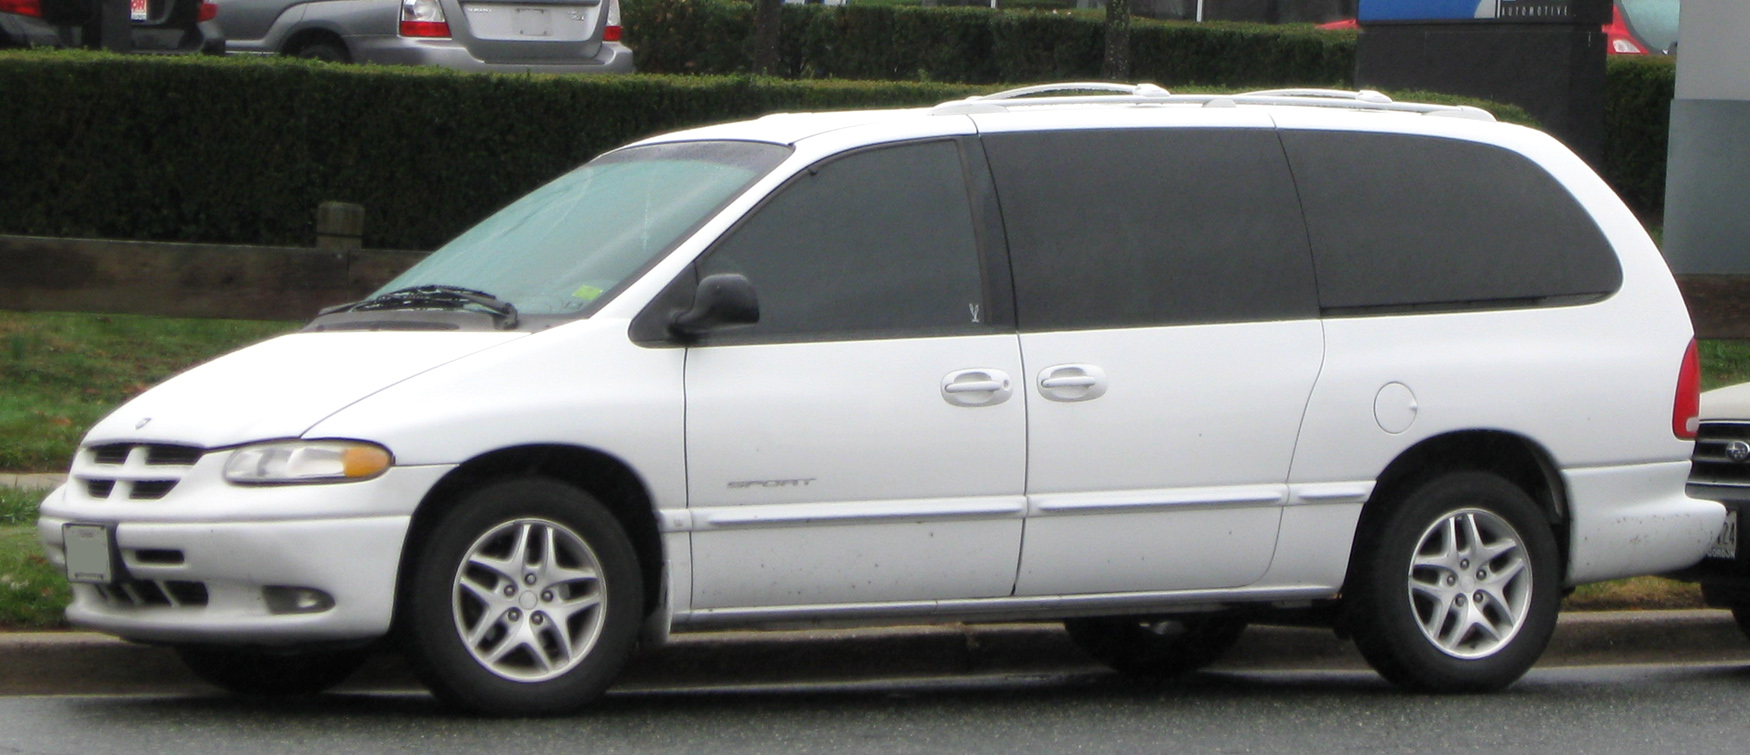 2000 Chrysler grand voyager minivan #4